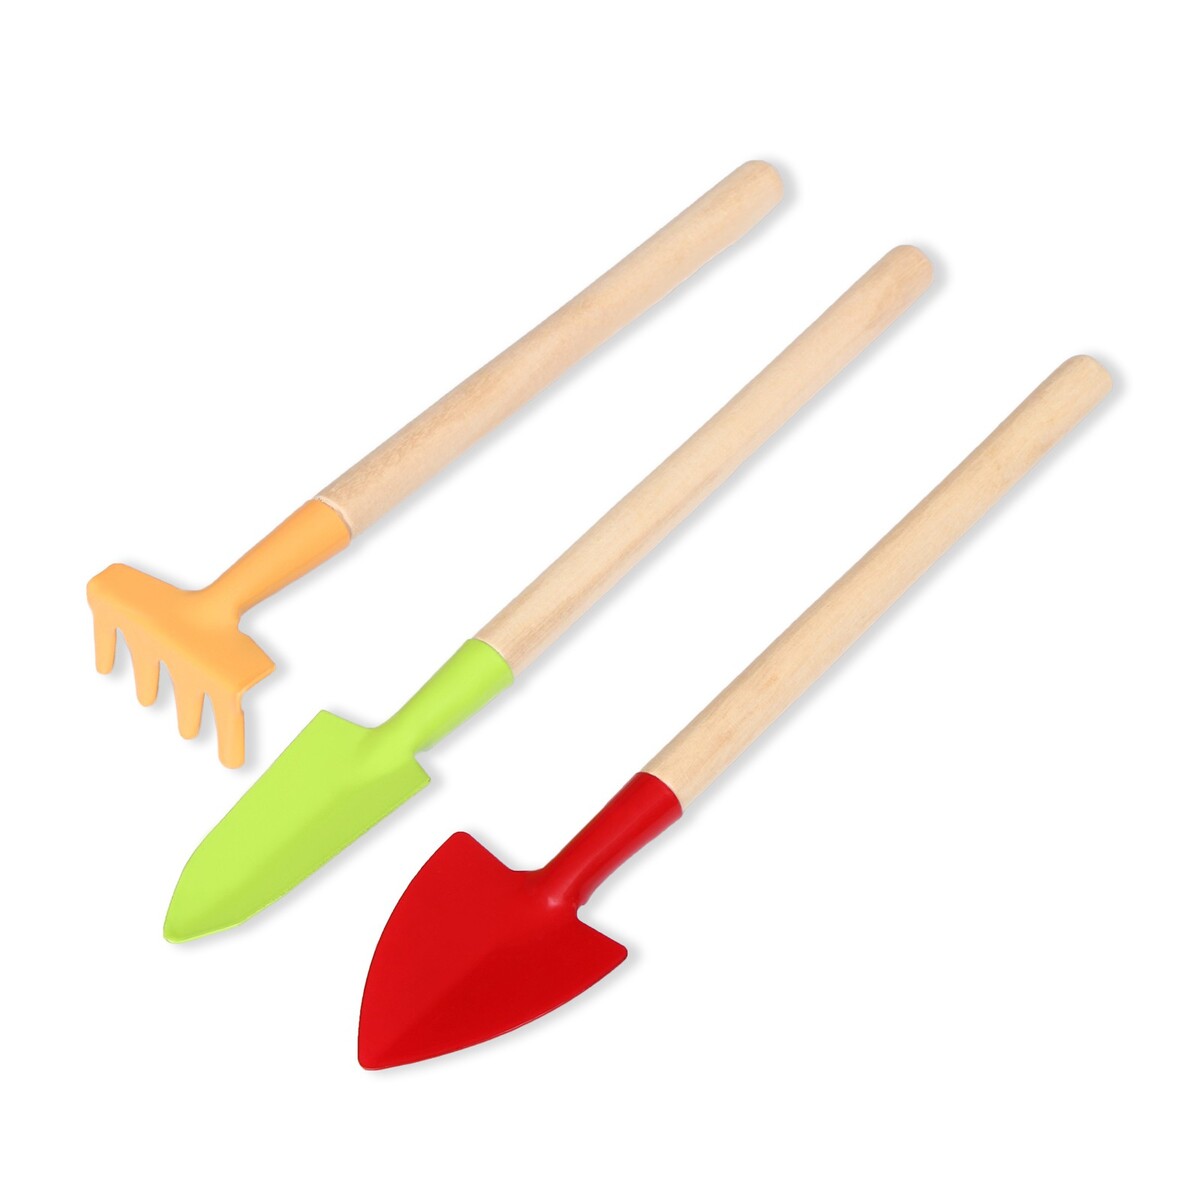 Набор садового инструмента, 3 предмета: рыхлитель, совок, грабли, длина 20 см, greengo набор садового инструмента greengo 2 предмета мотыжка совок длина 31 см пластиковые ручки